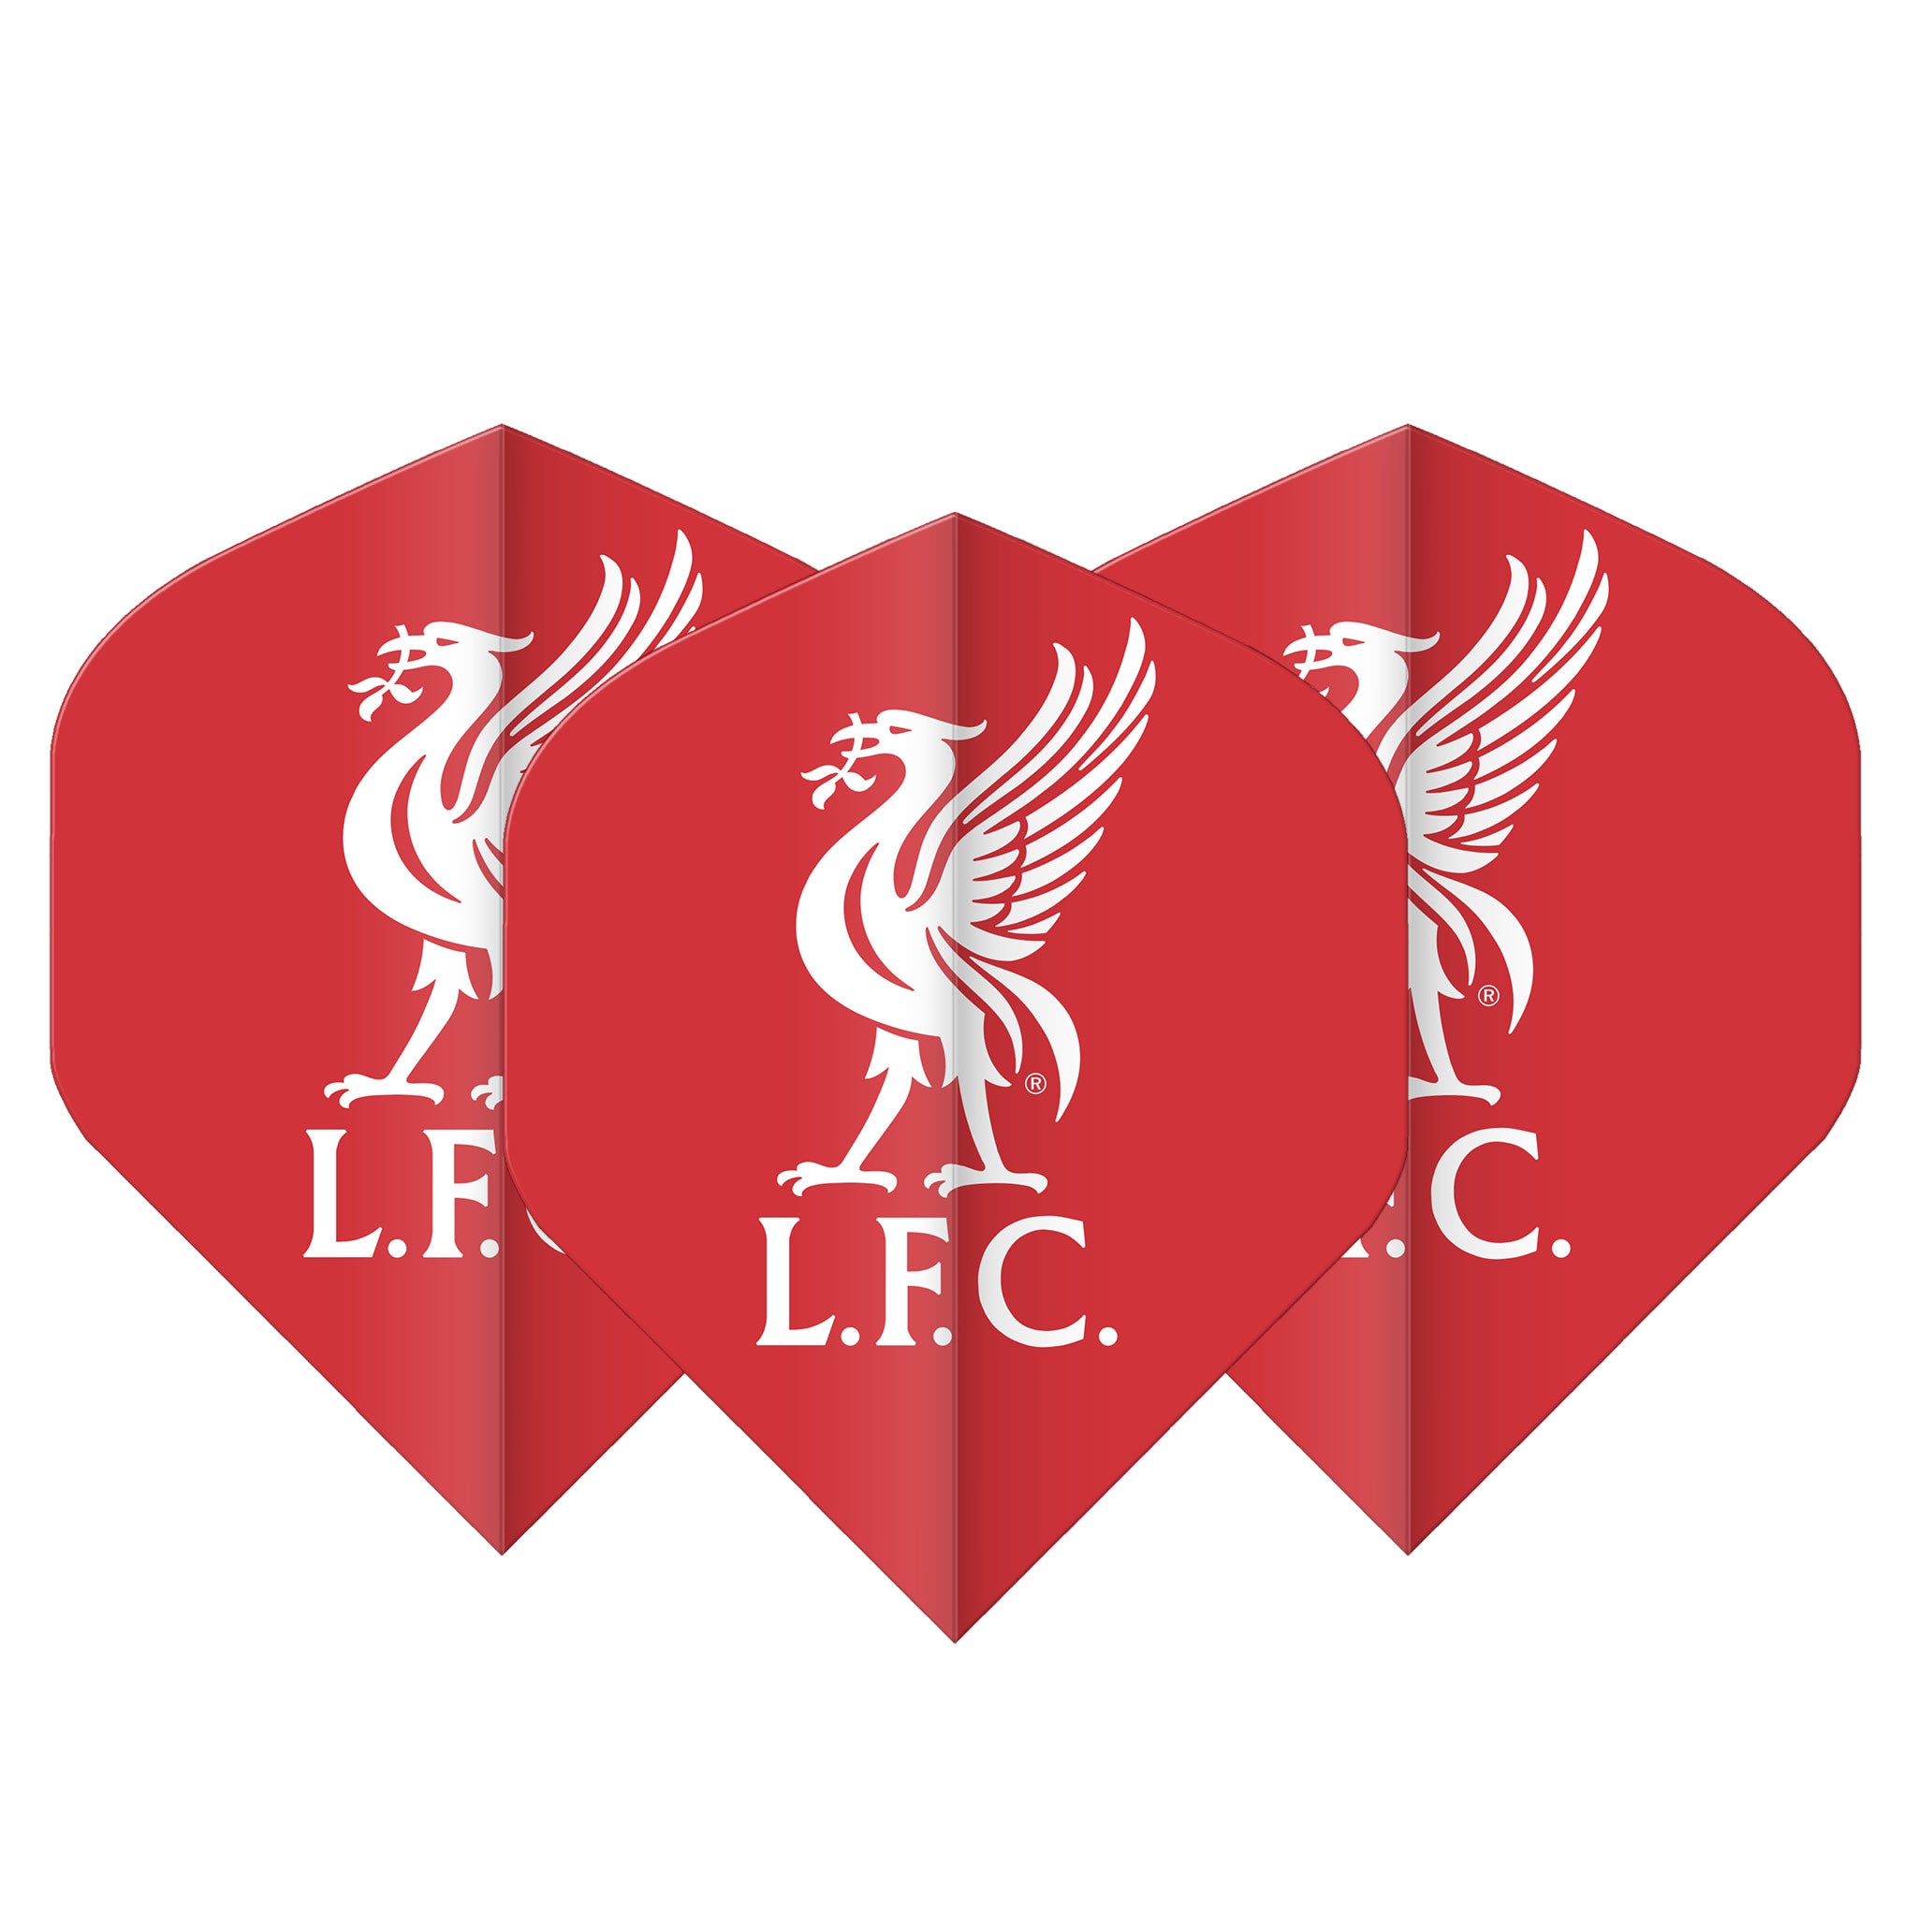 Liverpool Football Club Standard